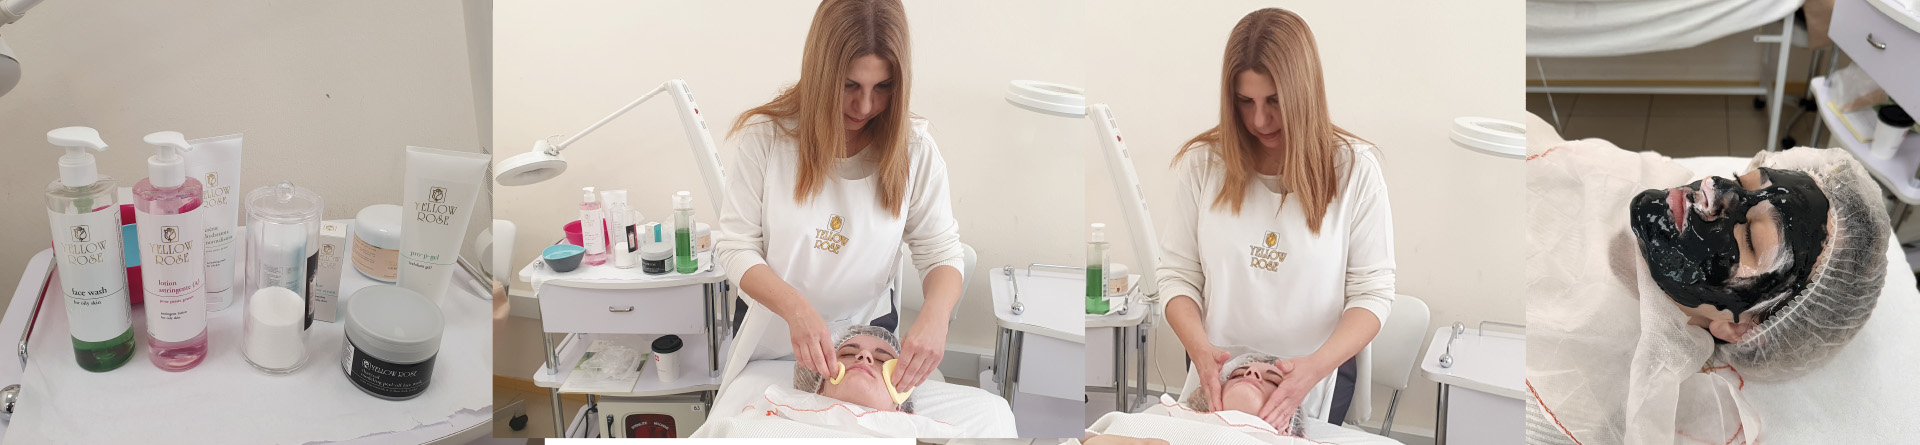 Παρουσίαση εξειδικευμένης θεραπείας στις φοιτήτριες  της Αισθητικής του KES College από την εταιρεία Yellow Rose Cosmetics Kypros Christophorou Ltd